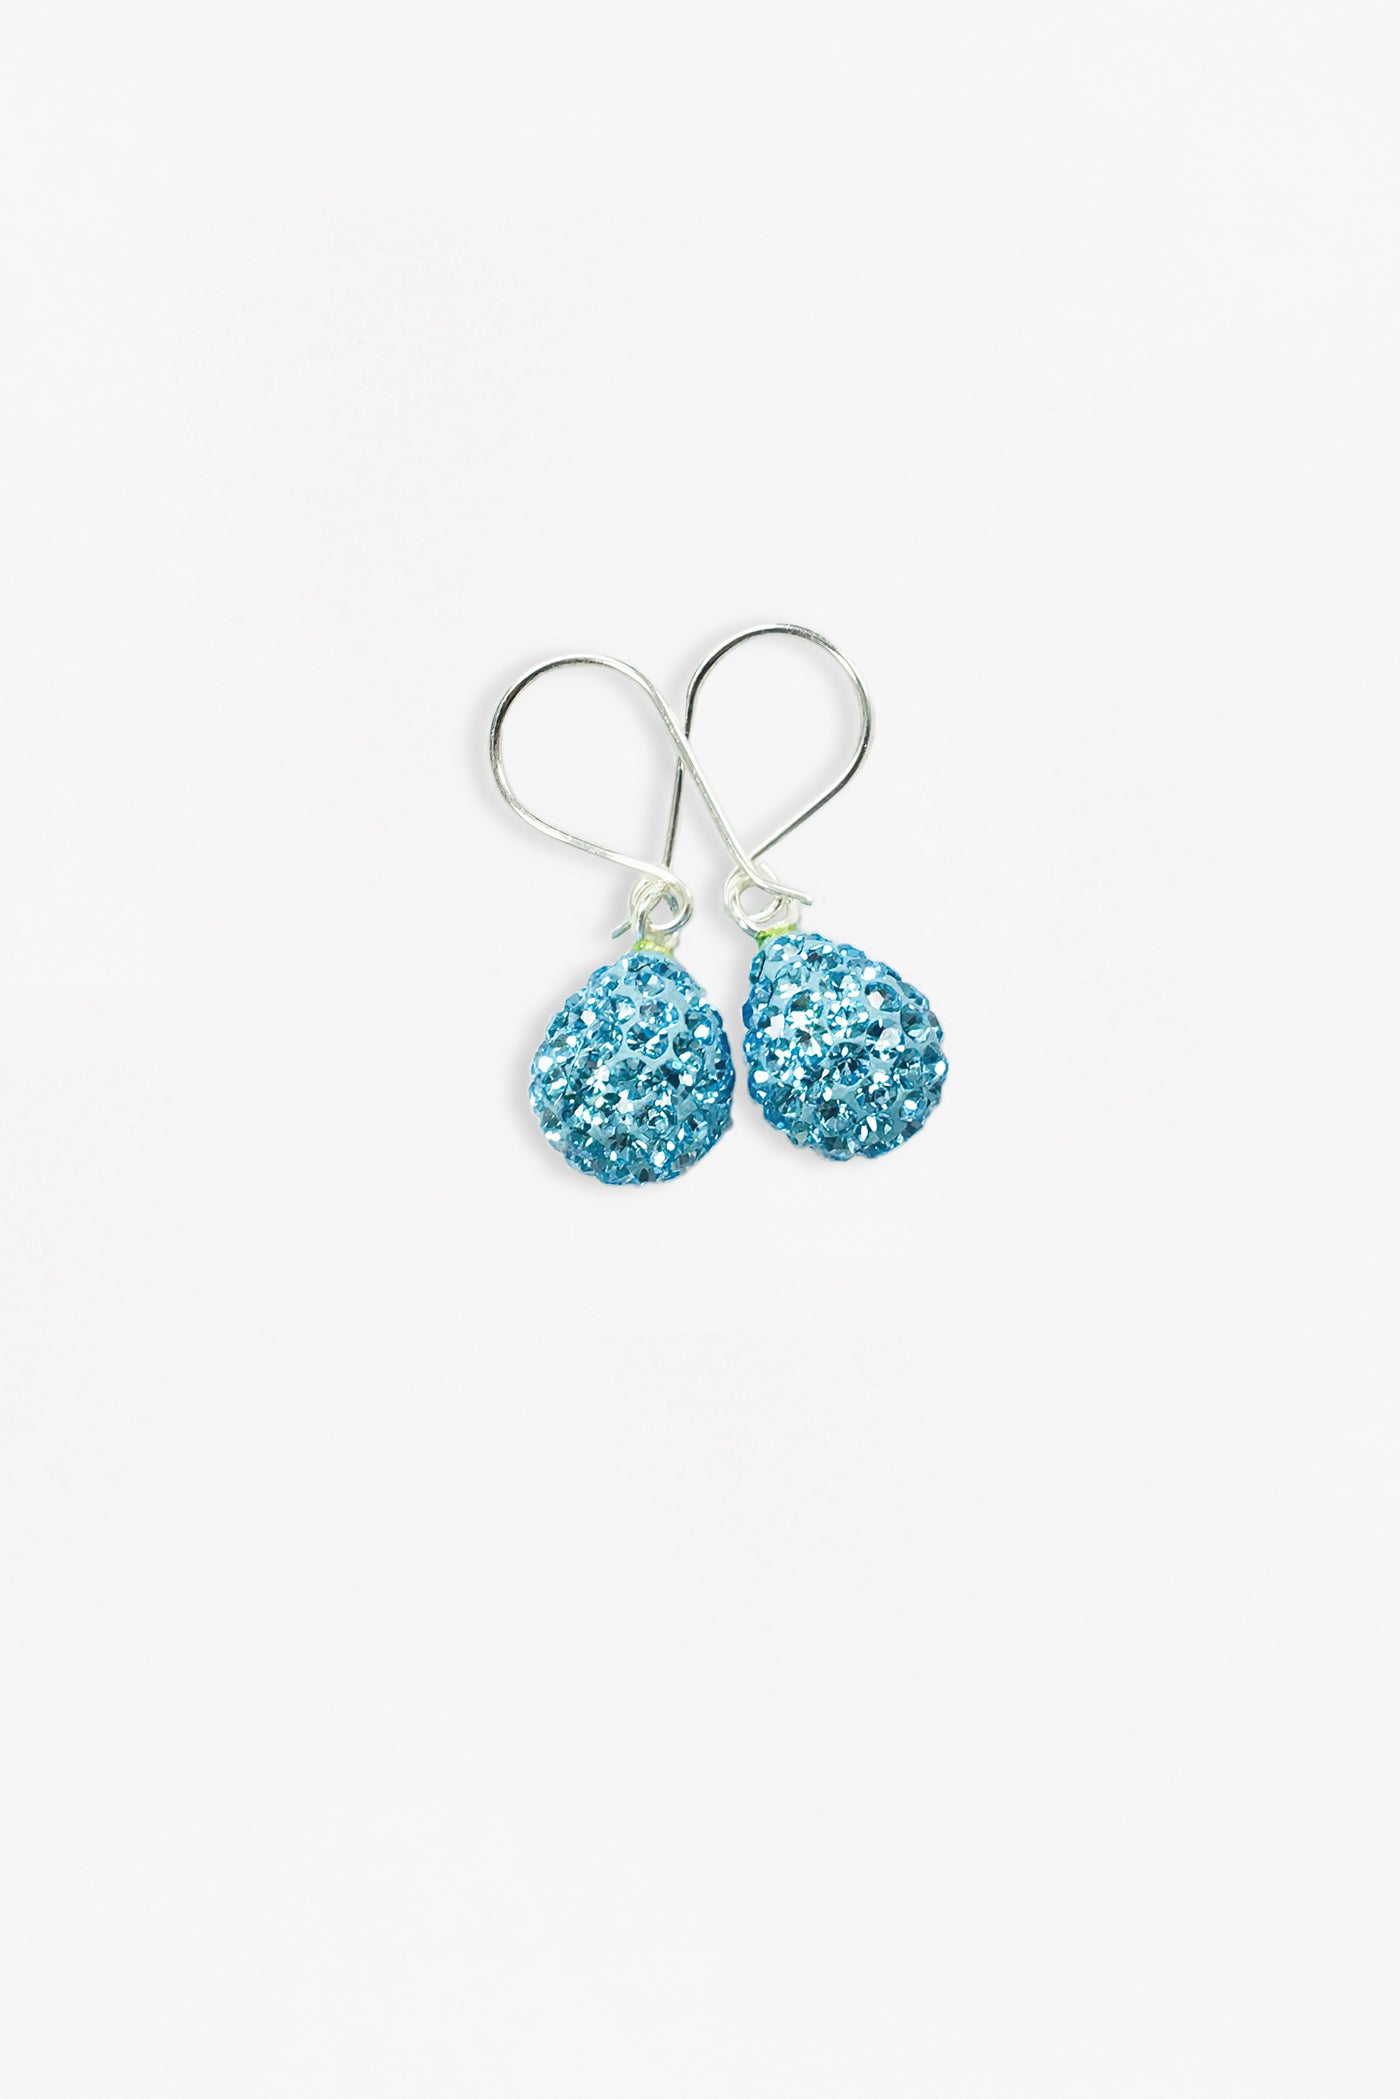 Swarovski Crystal Mini Teardrop Sterling Silver Earrings in Aquamarine | Annie and Sisters